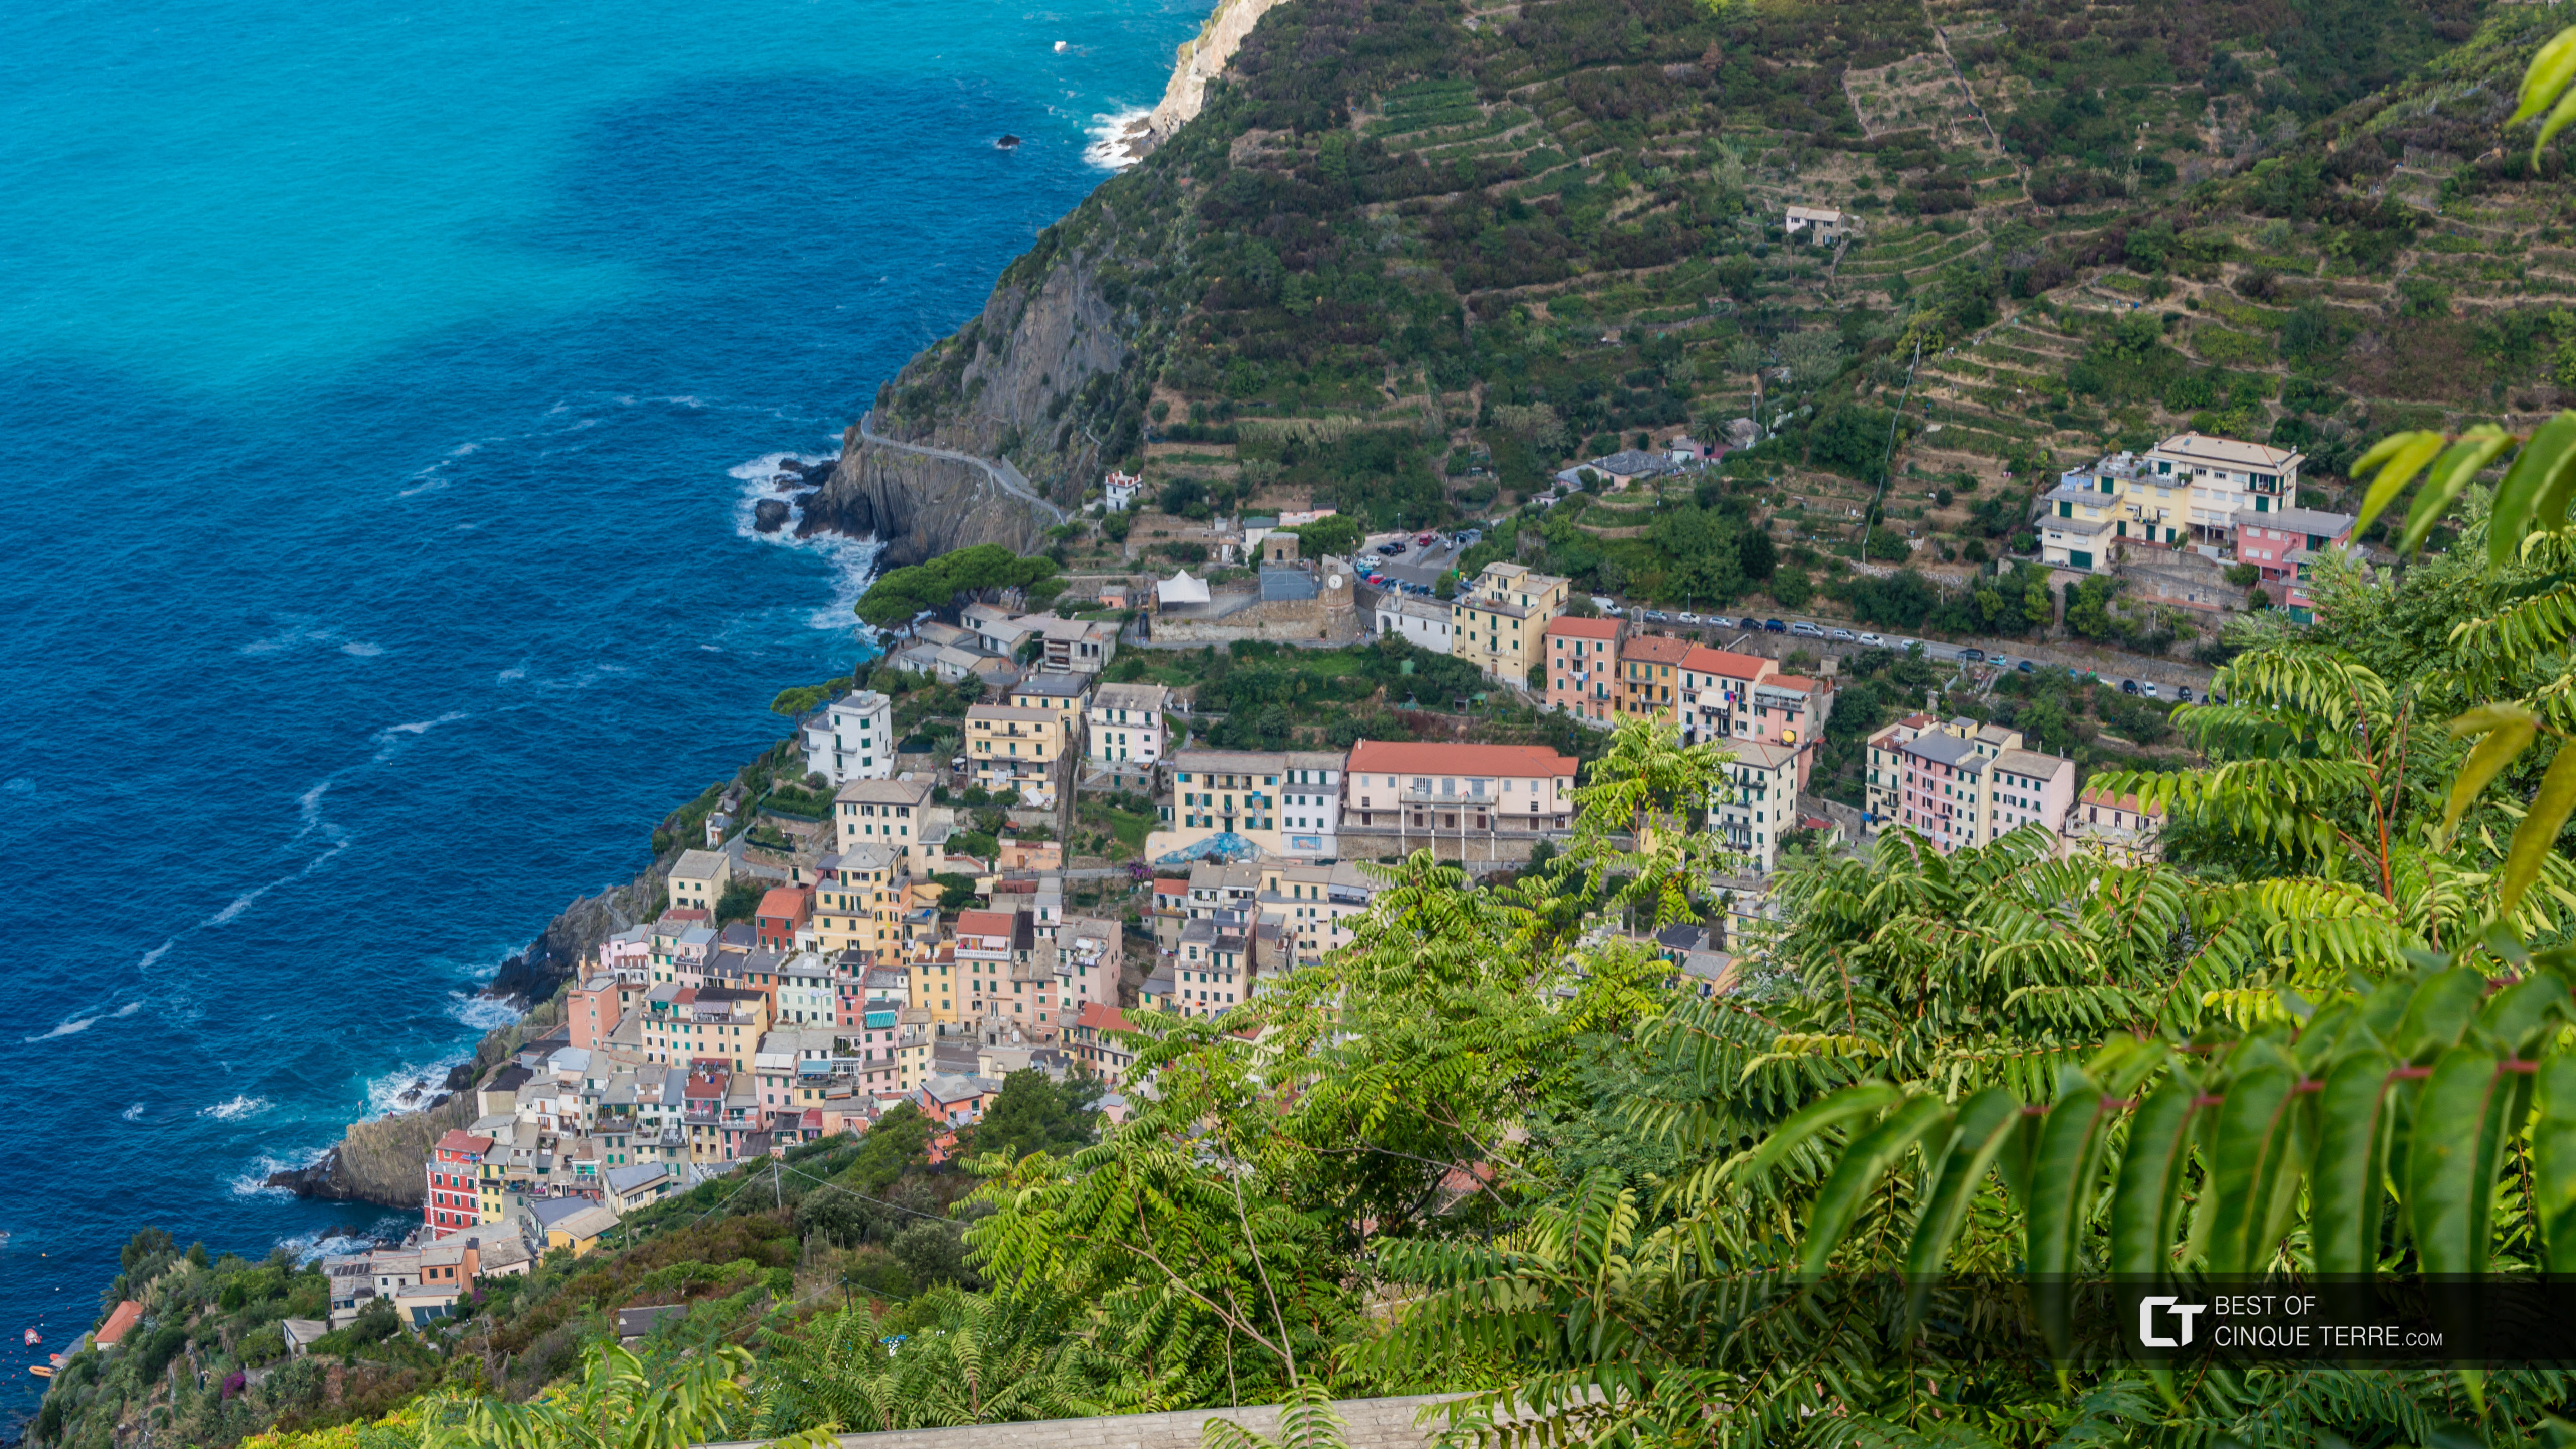 Vista del pueblo desde el camino por el santuario de Montenero, Riomaggiore, Cinque Terre, Italia